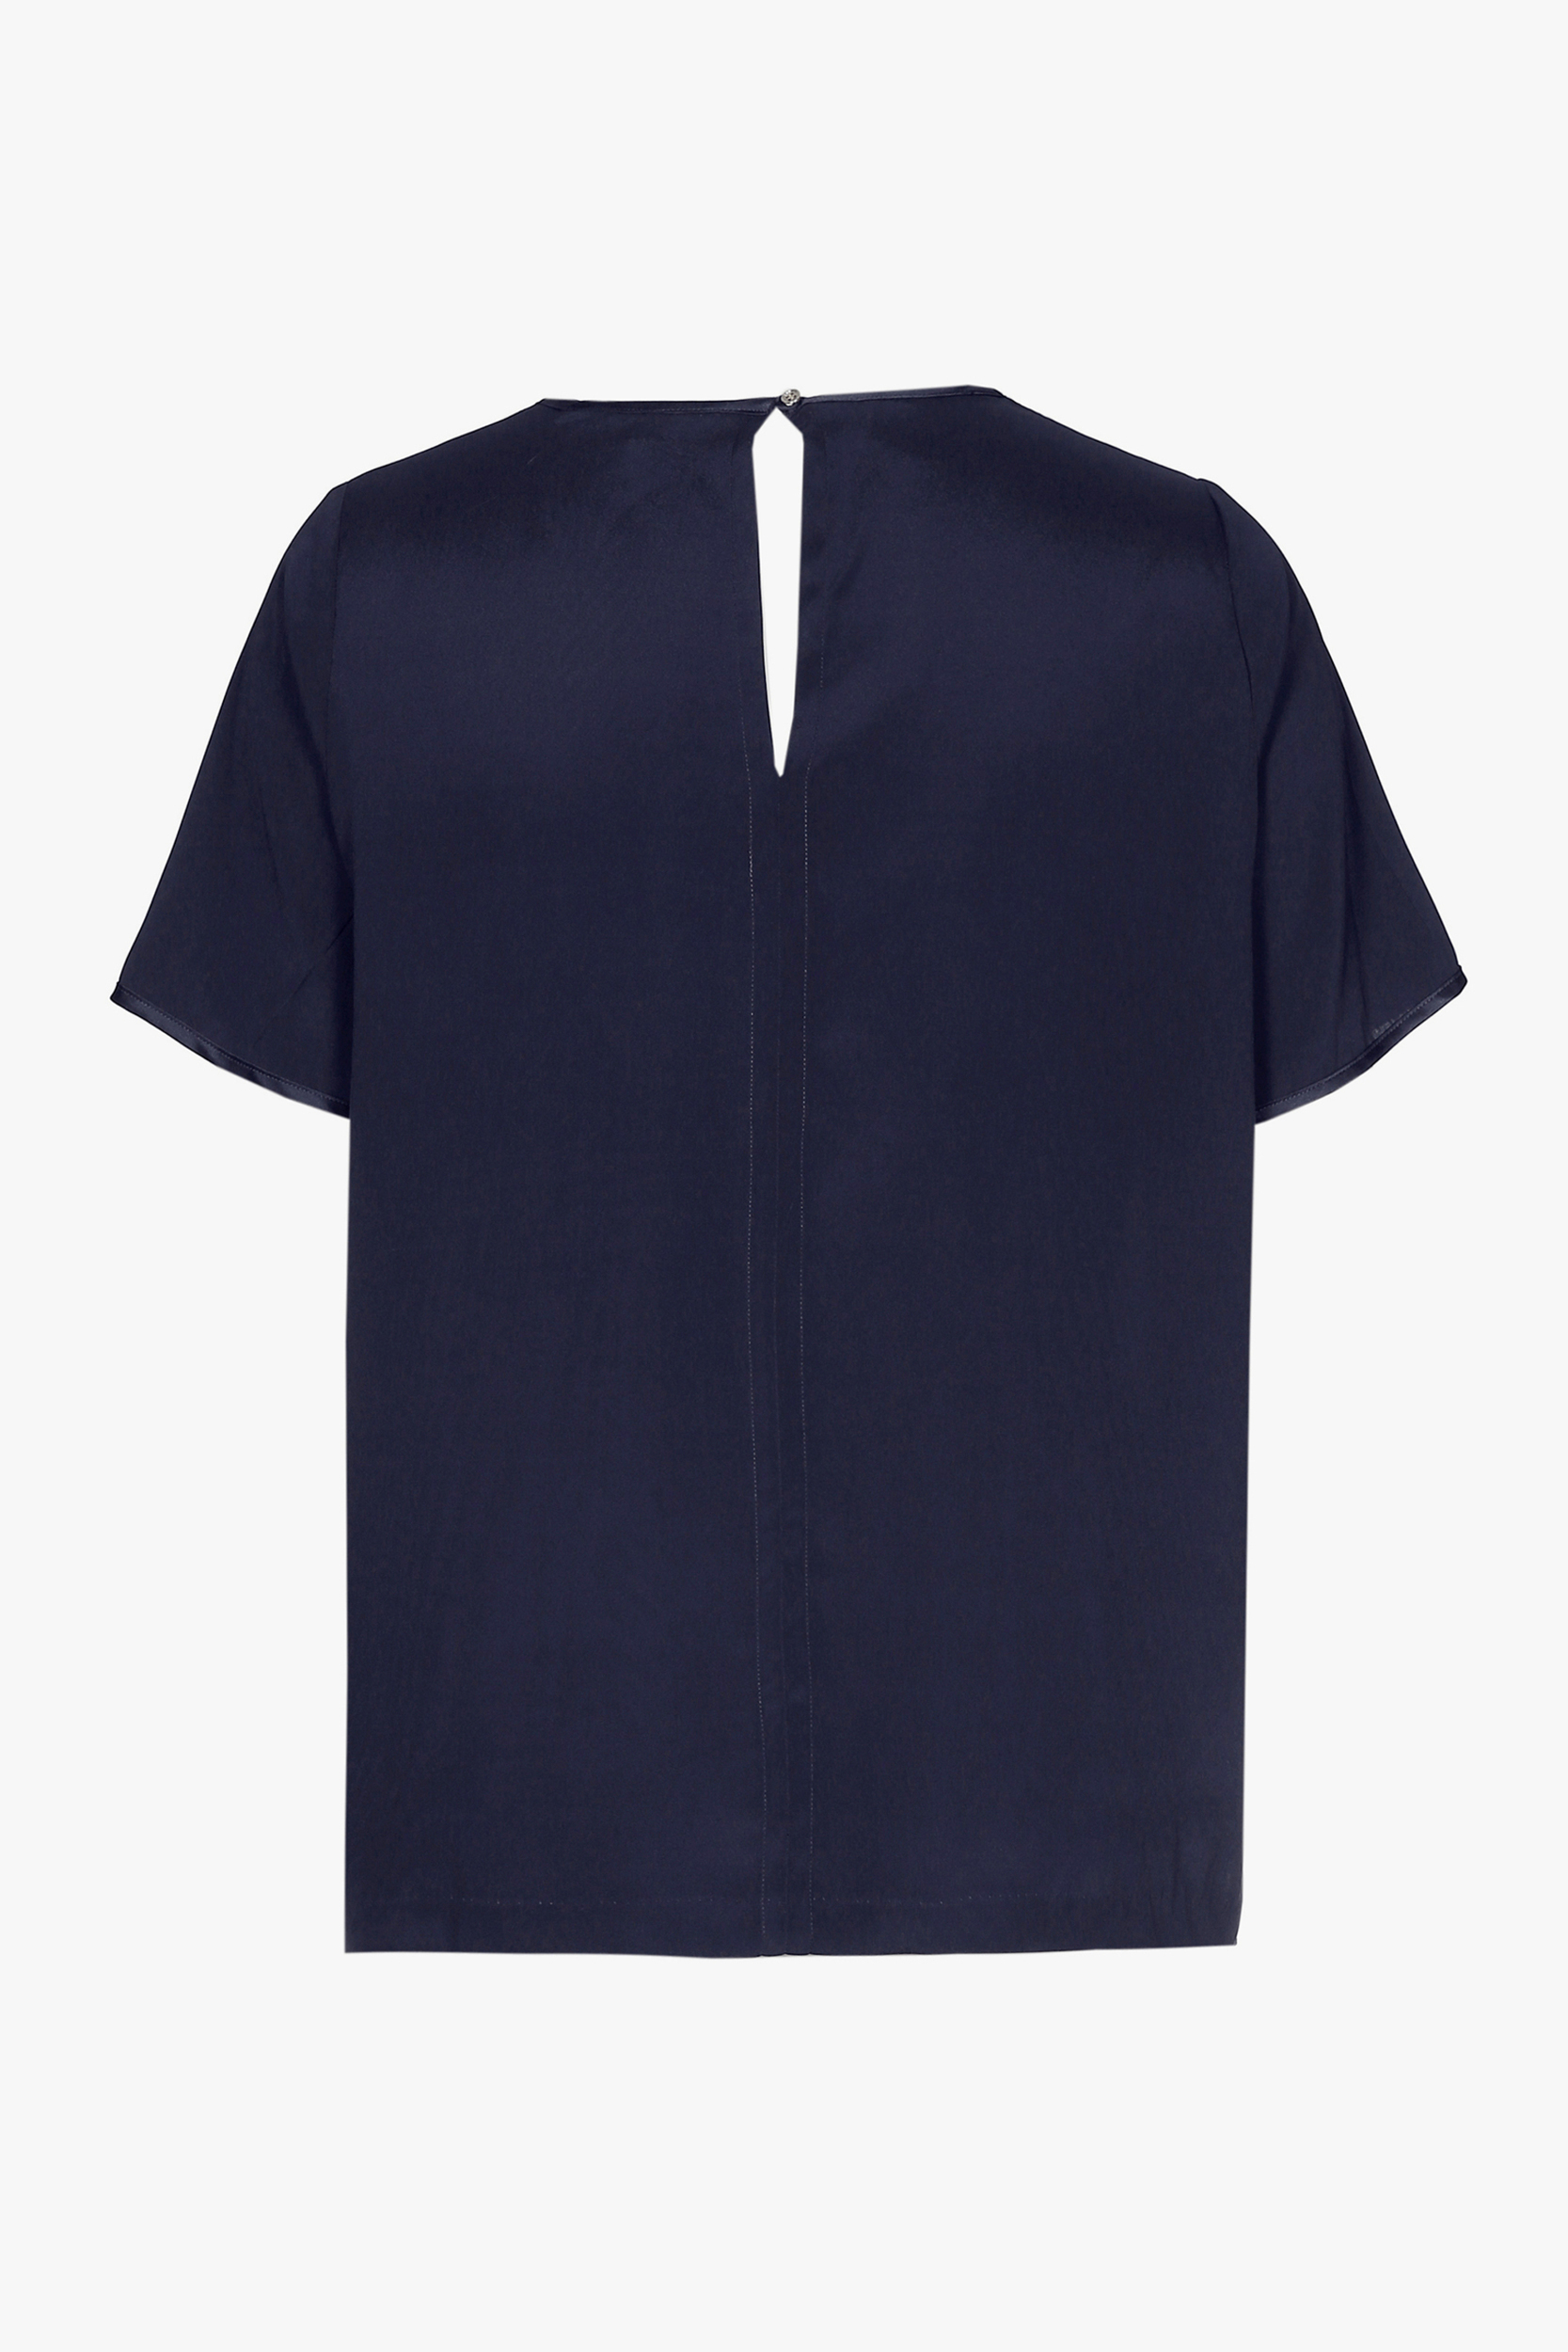 T-shirt en soie bleu marine à manches courtes et col en V